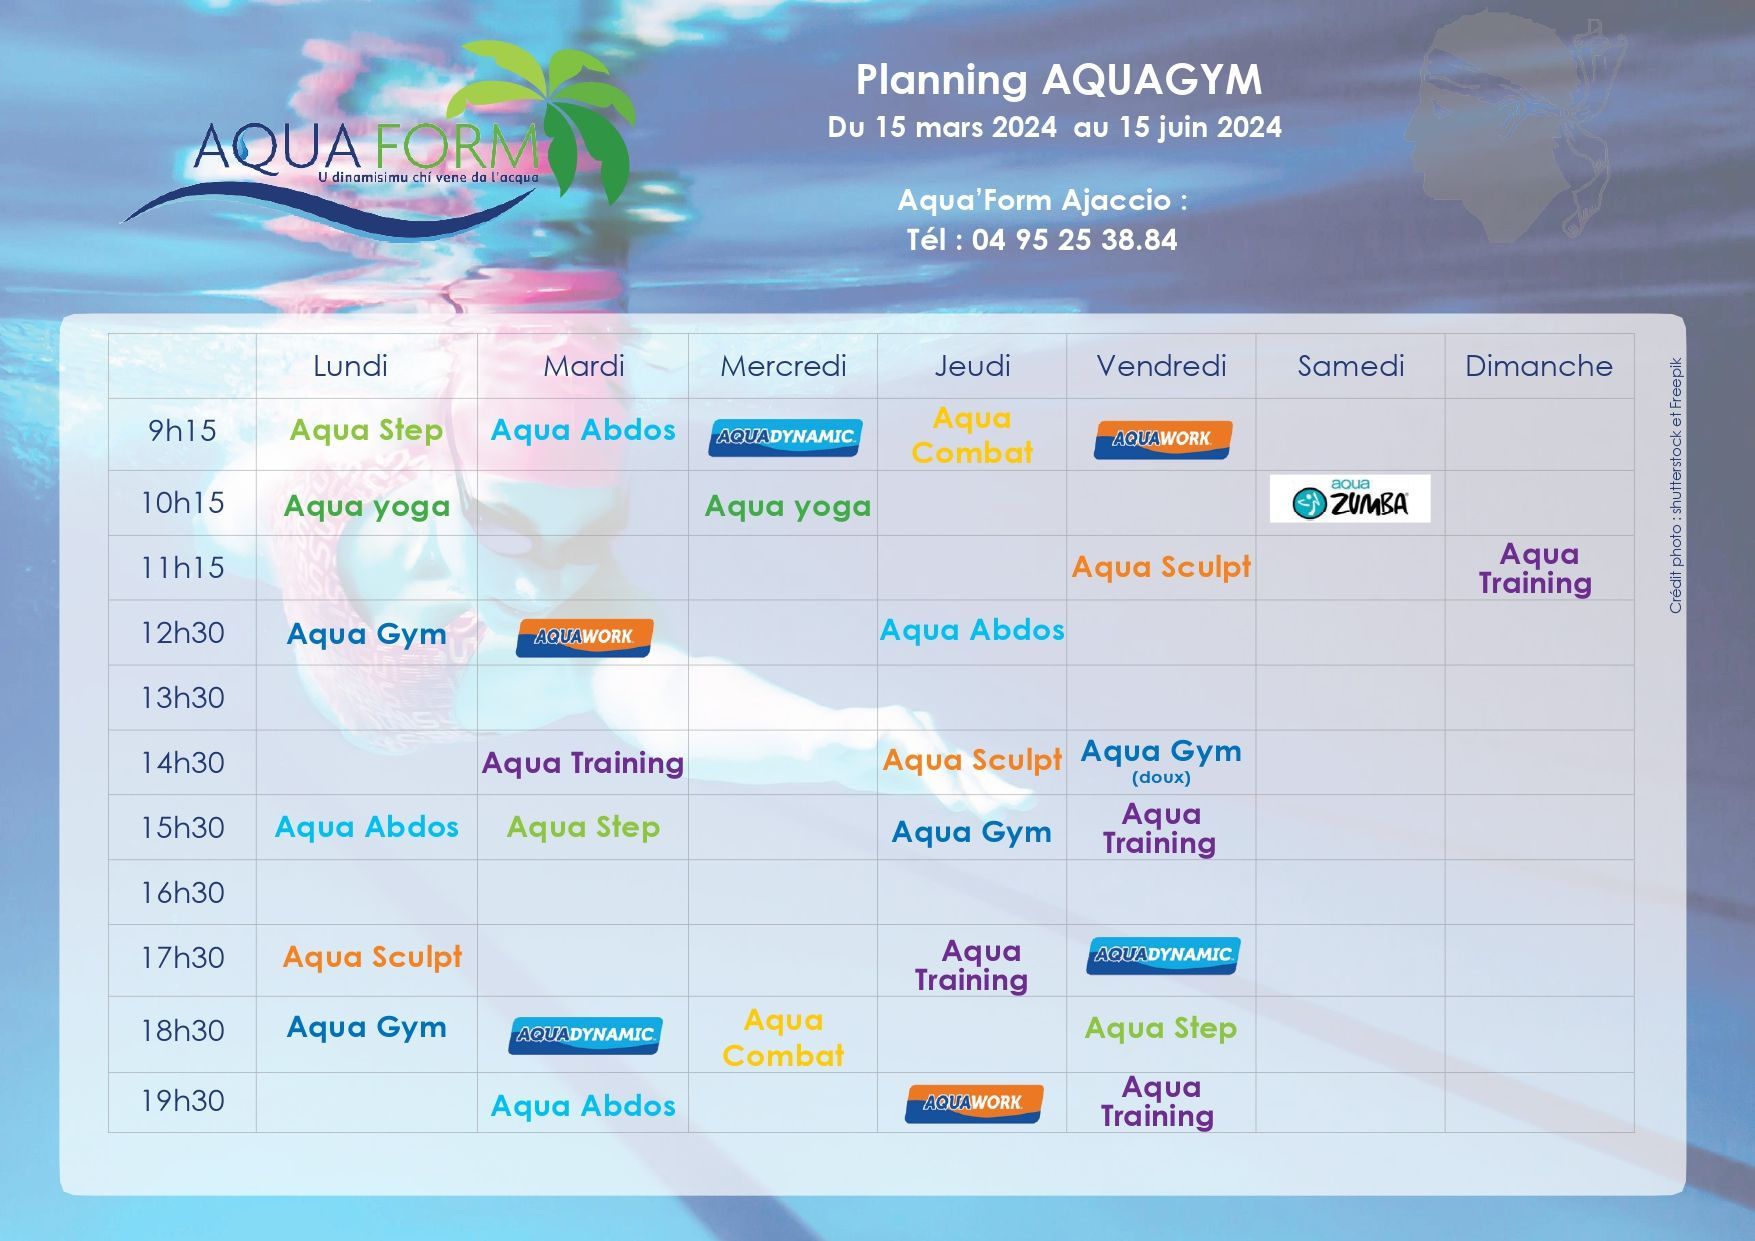 Planning aquagym